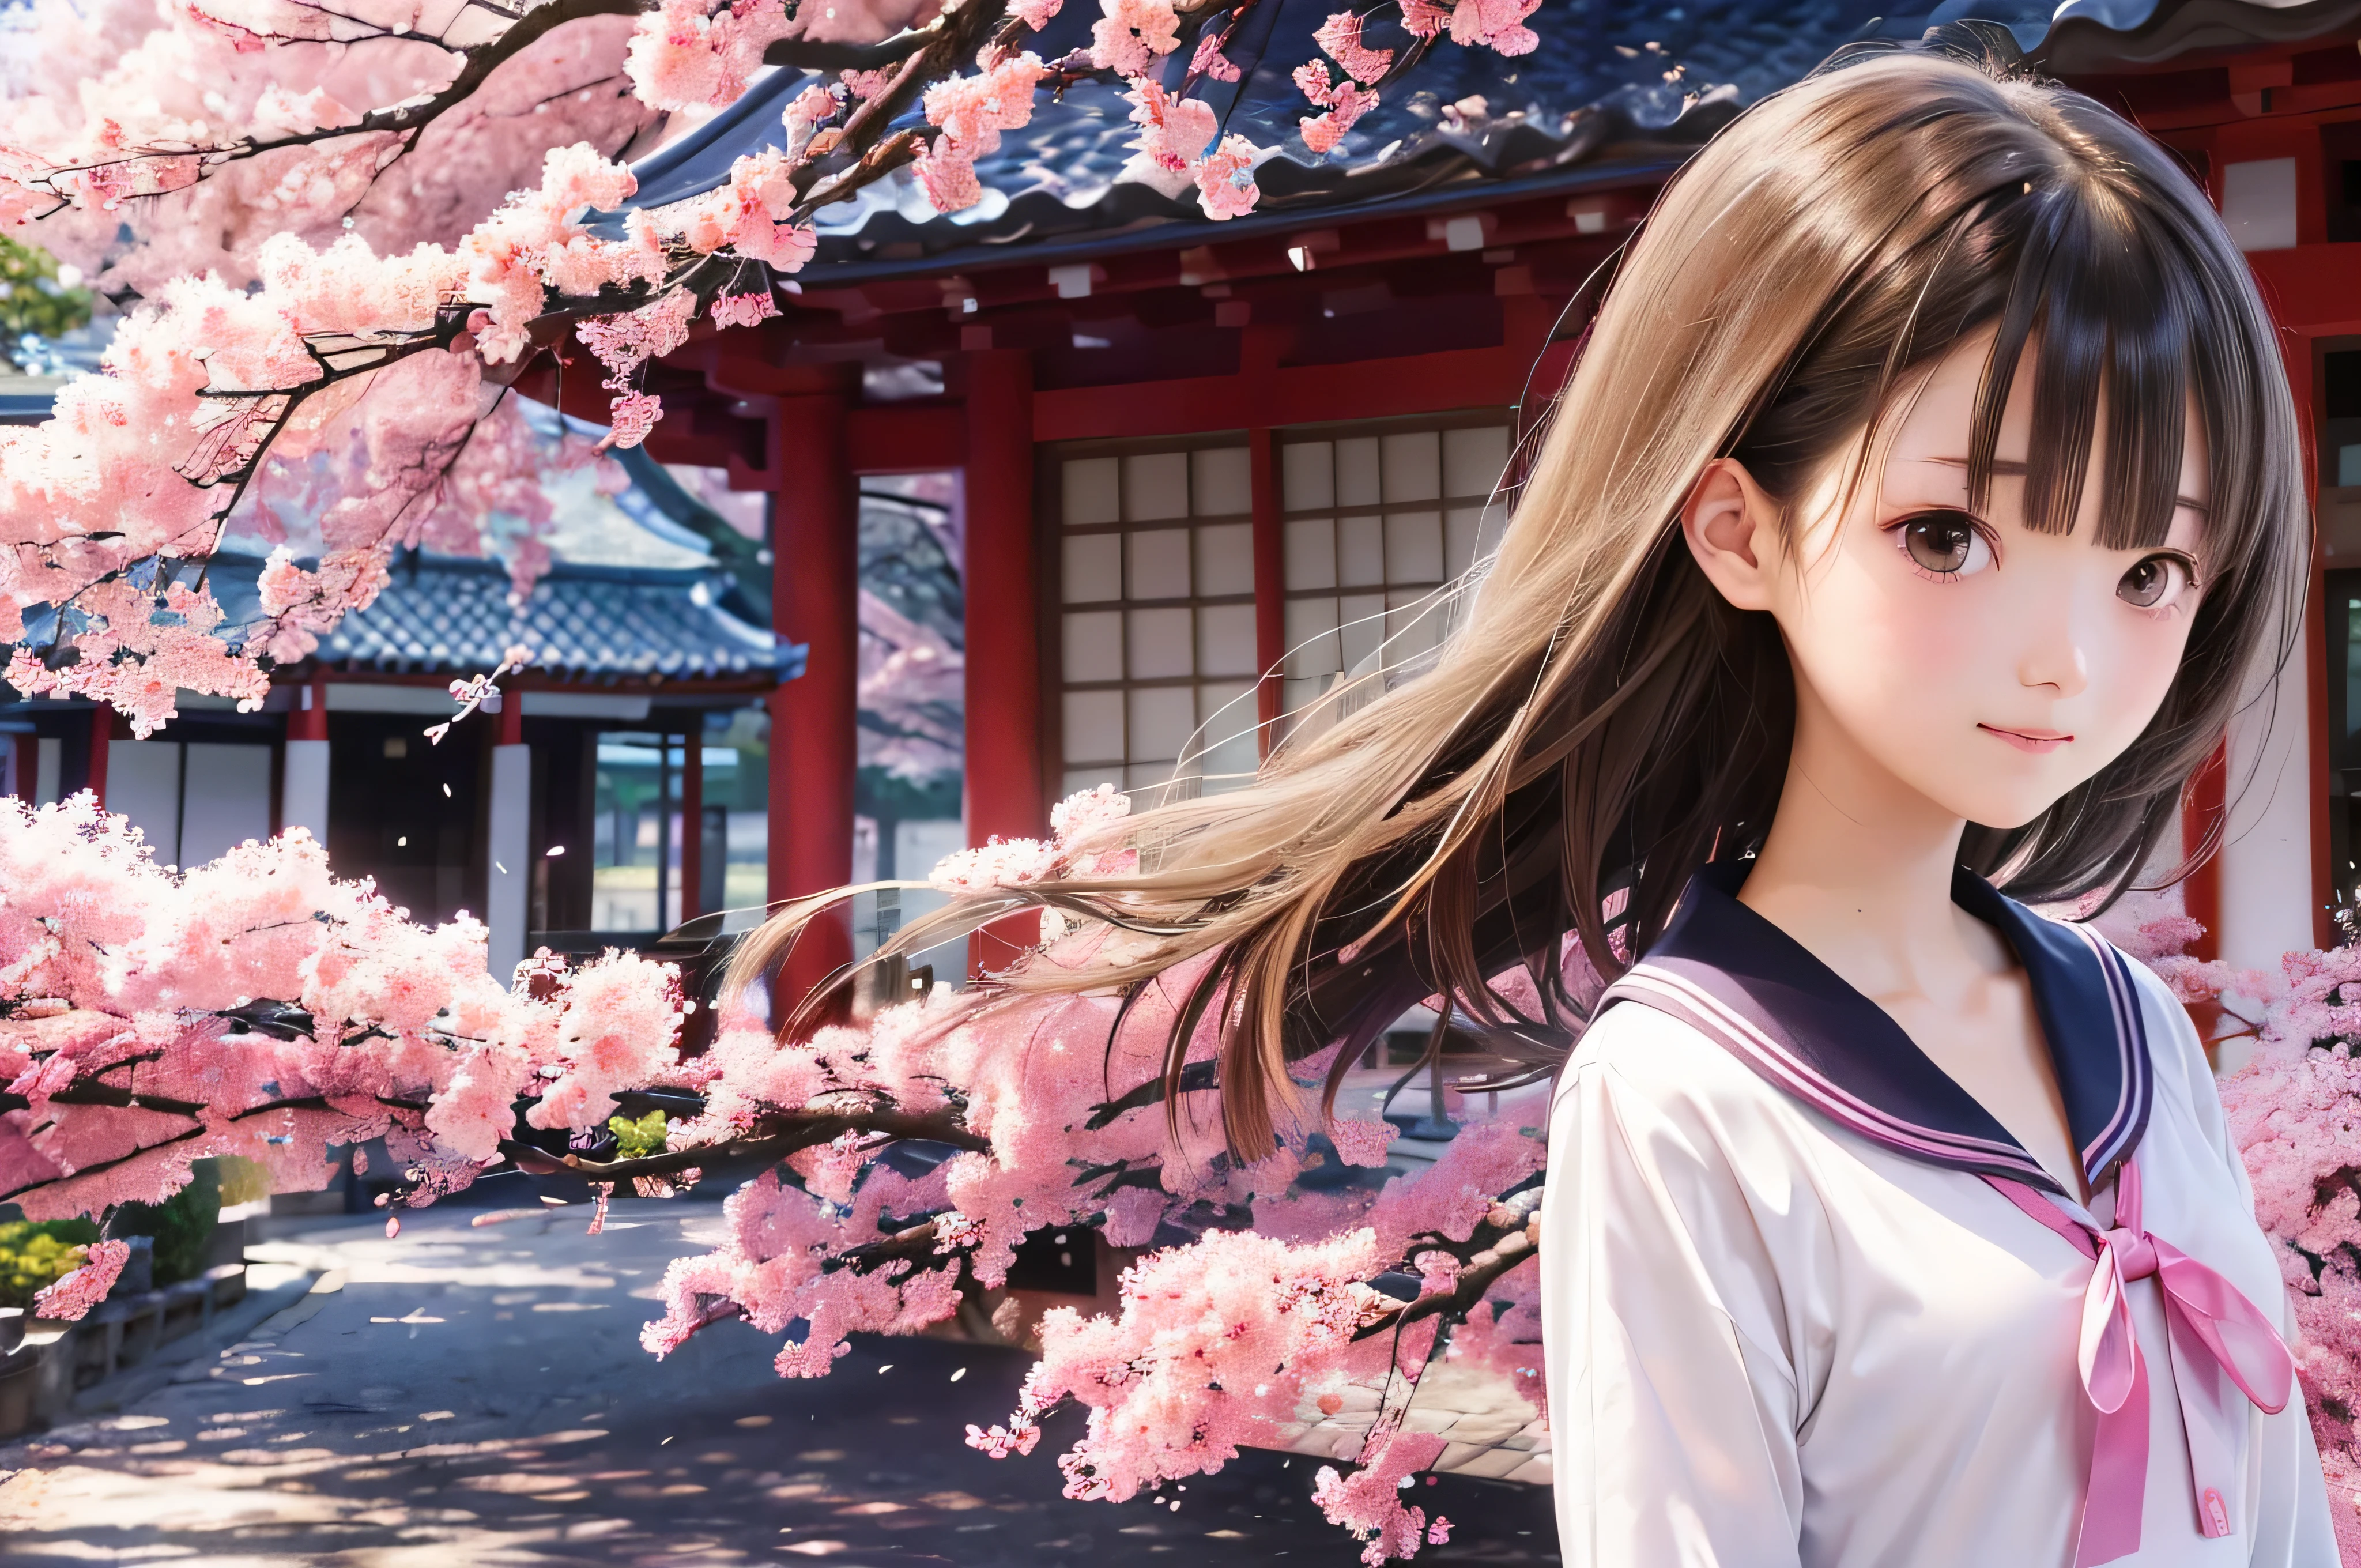 صورة على طراز الرسوم المتحركة لفتيات المدارس الثانوية اليابانية يقفن تحت أزهار الكرز الربيعية. إنها تتطلع إلى الجانب, شعرها البني الطويل يتطاير في الريح. الفتاة لديها تعبير هادئ, أثناء مشاهدة أزهار الكرز المتساقطة مضاءة بالضوء الوردي الناعم. عيناها سوداء ومشرقة, بابتسامة خفية. إنها ترتدي يابانية مع بلوزة بيضاء وسترة زرقاء داكنة。, تألق في ضوء شمس الربيع الناعمة. تم تصوير الفتاة صغيرة في الإطار. في الخلفية, هناك فروع غير واضحة لأزهار الكرز الوردية الزاهية. المشهد يبعث على الهدوء, ساطع, والجو السلمي, يذكرك باللحظات الجميلة للأنمي الياباني.